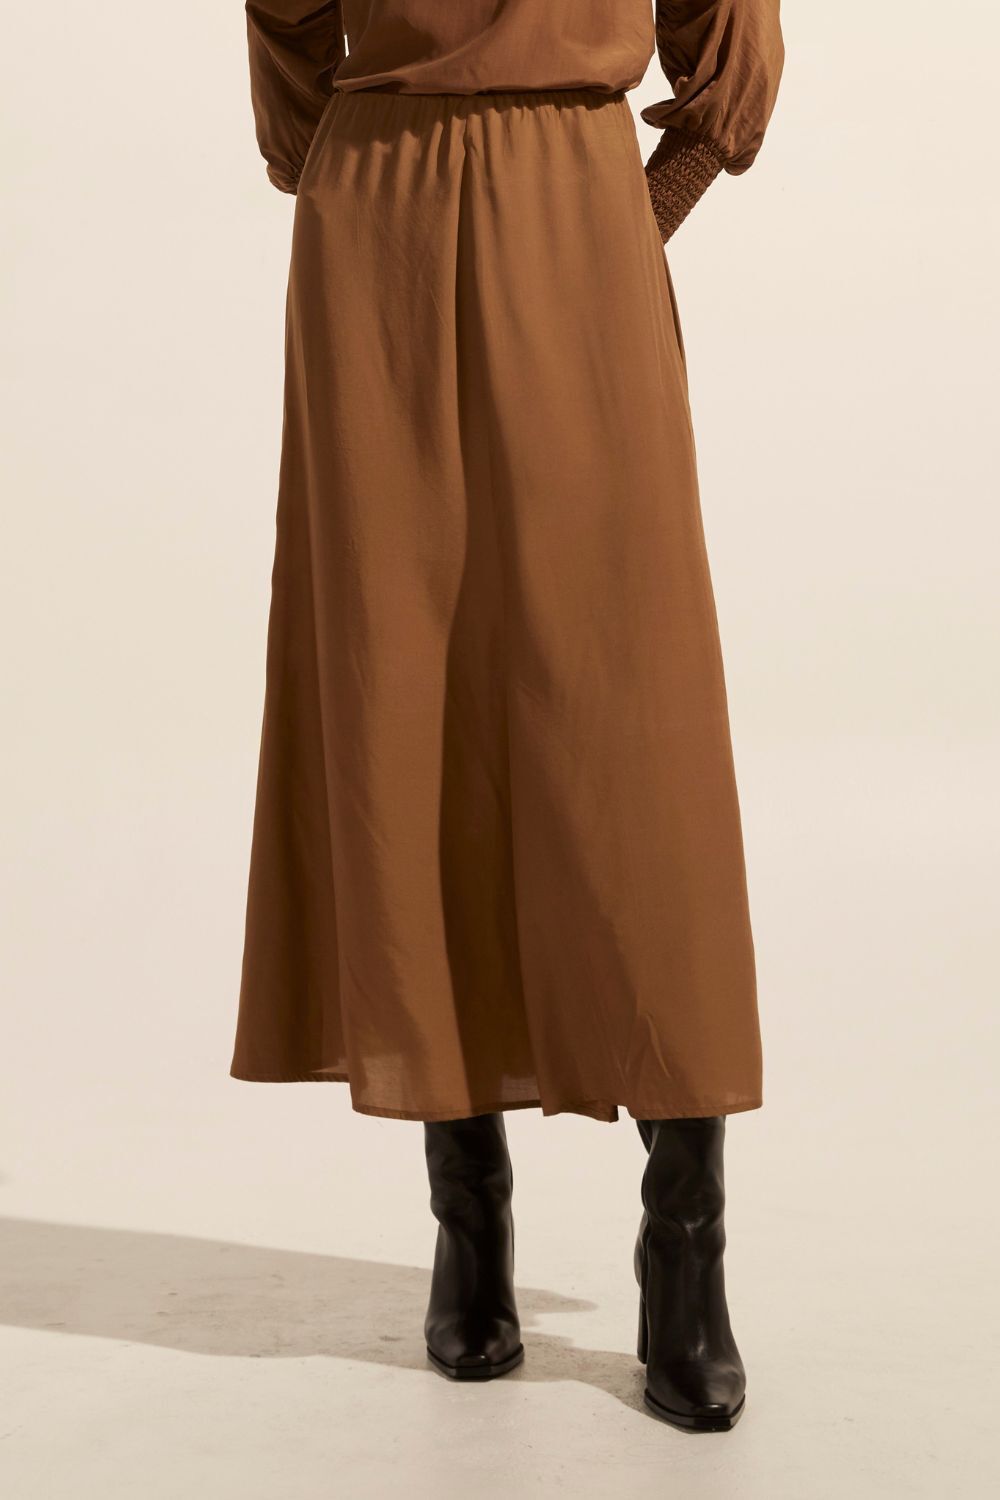 Zoe Kratzmann Recite Skirt - Caramel - Shop 9